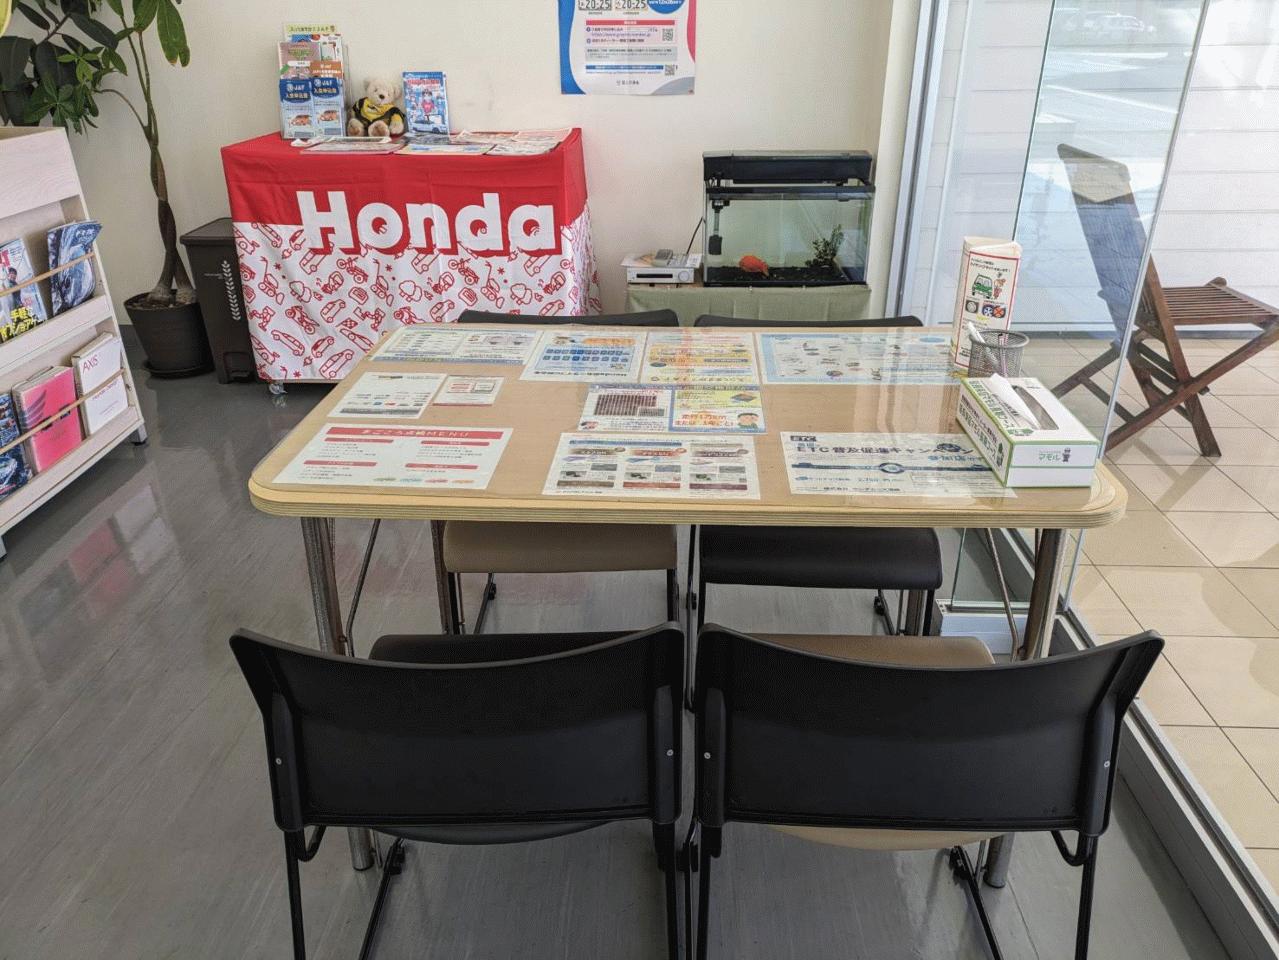 Honda Cars須崎